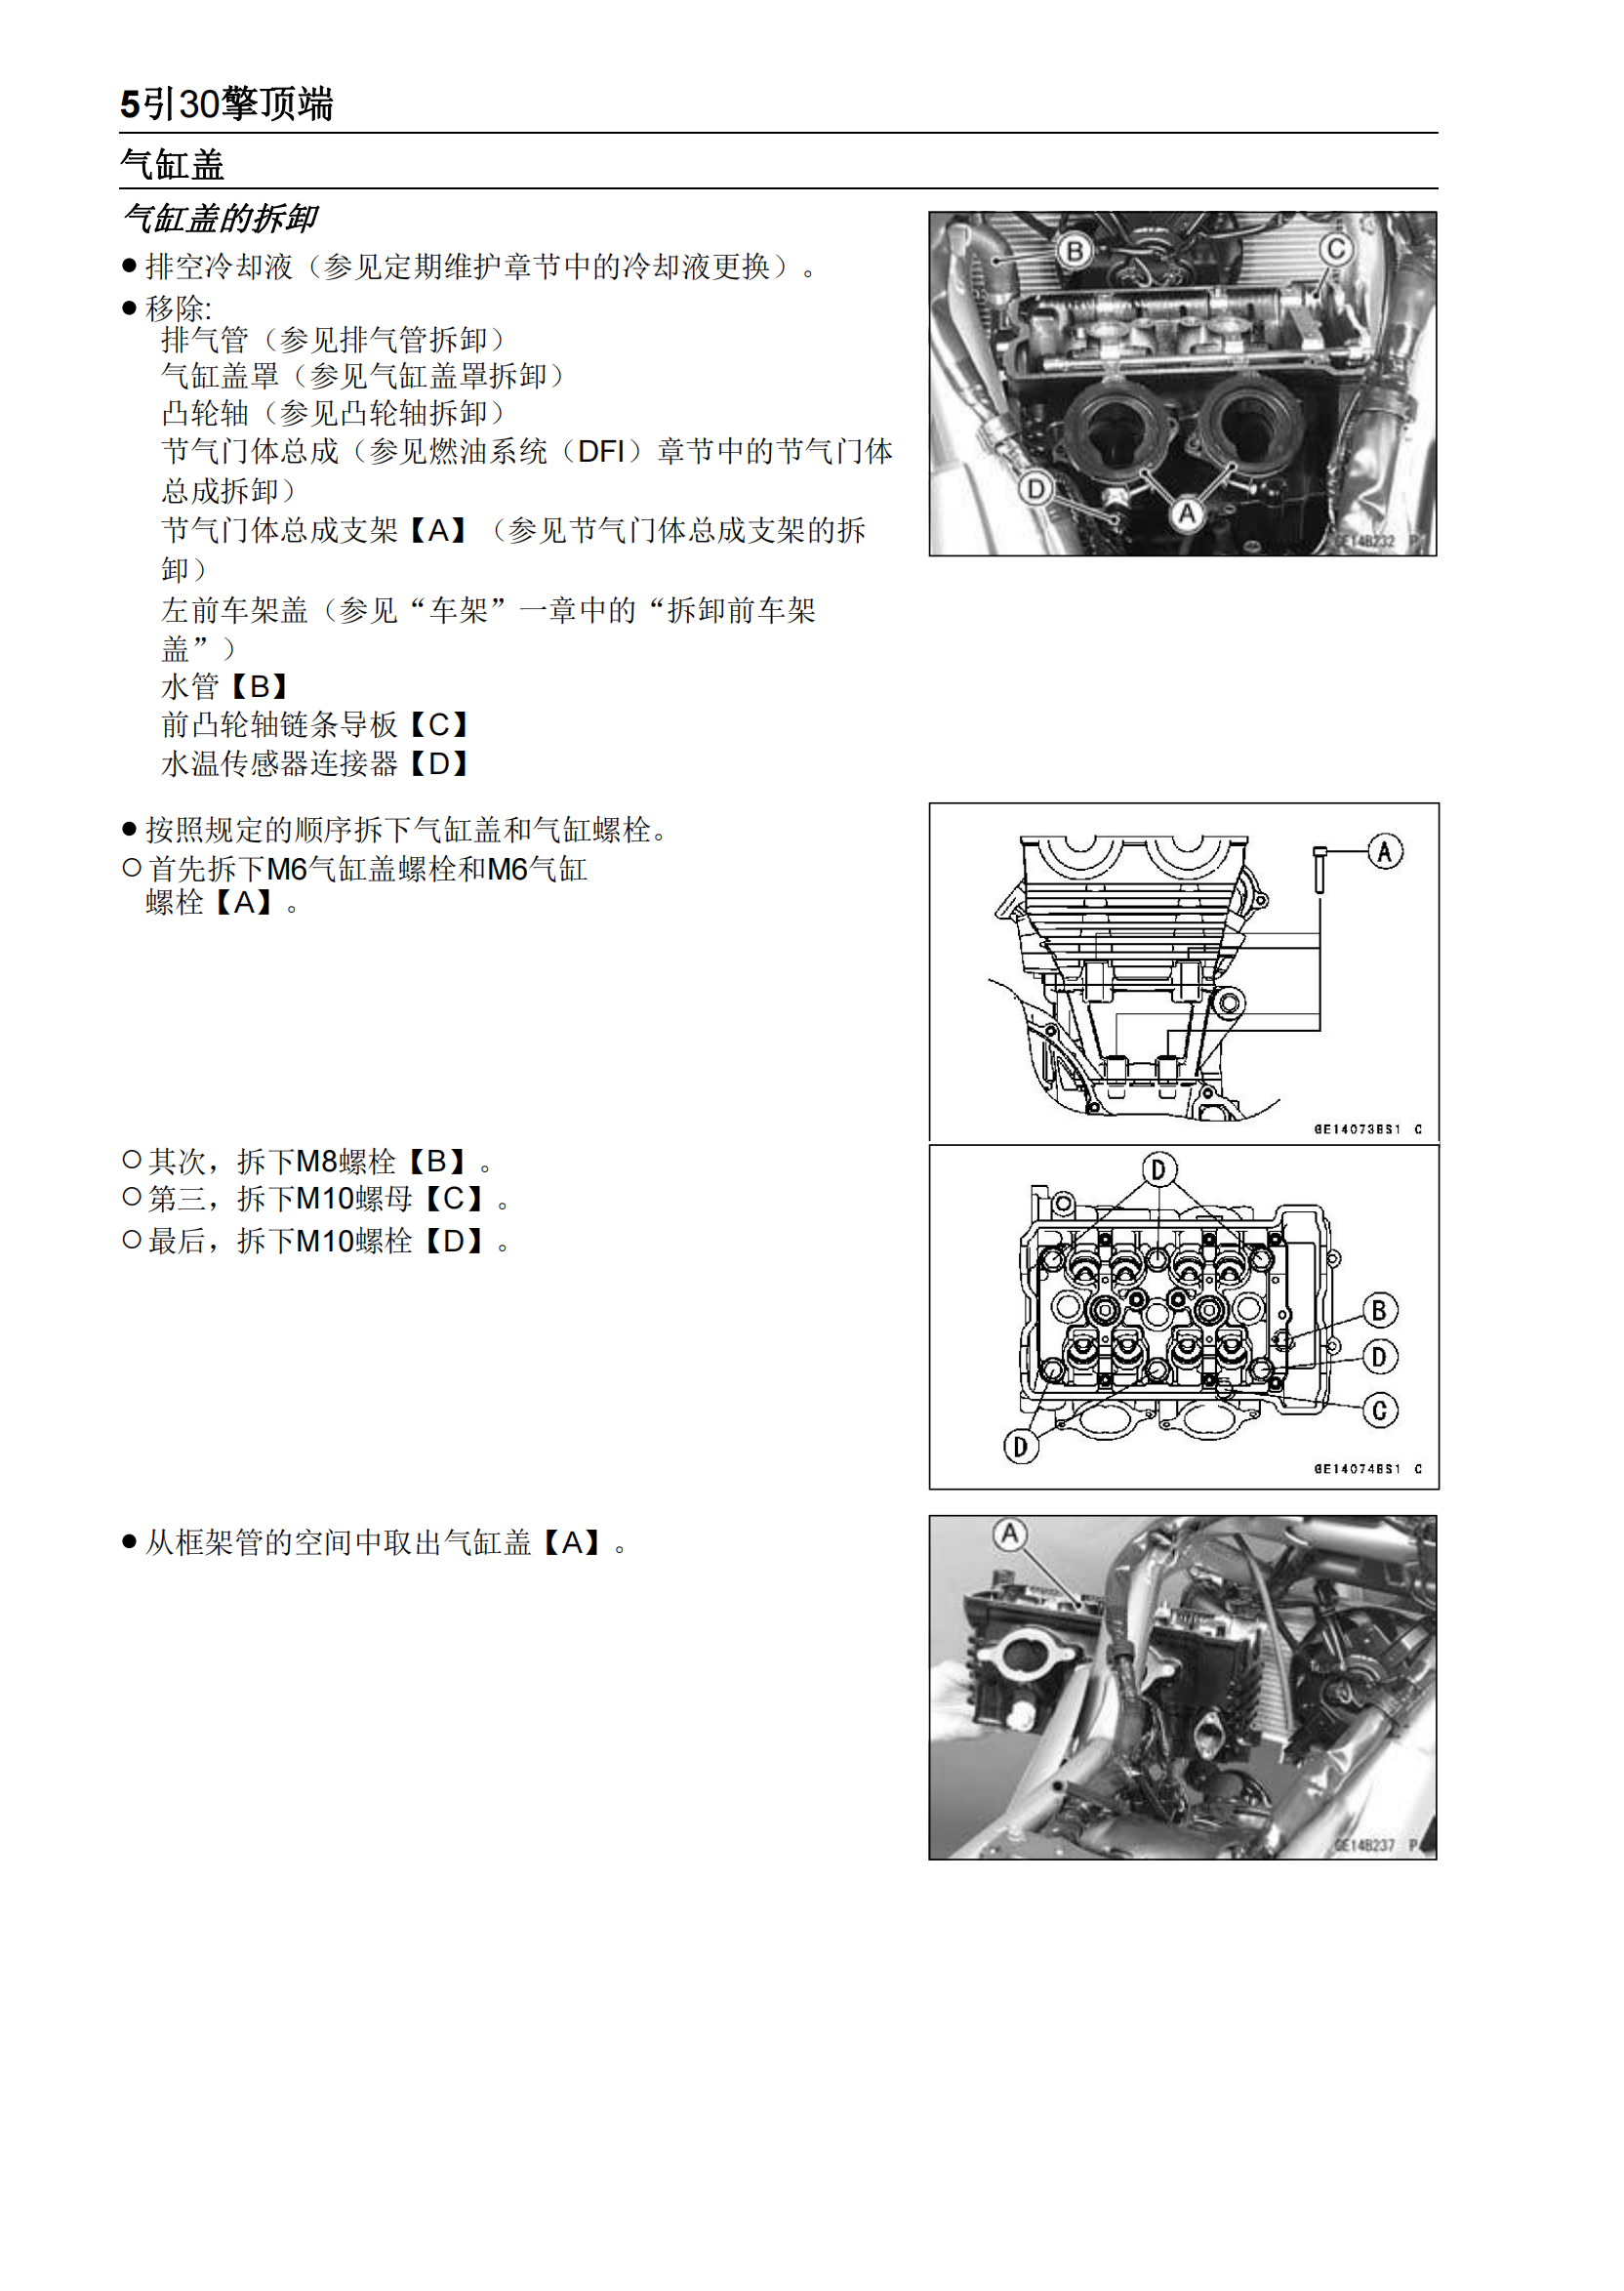 简体中文2007-2009年川崎异兽650 kawasaki versys 650维修手册插图4